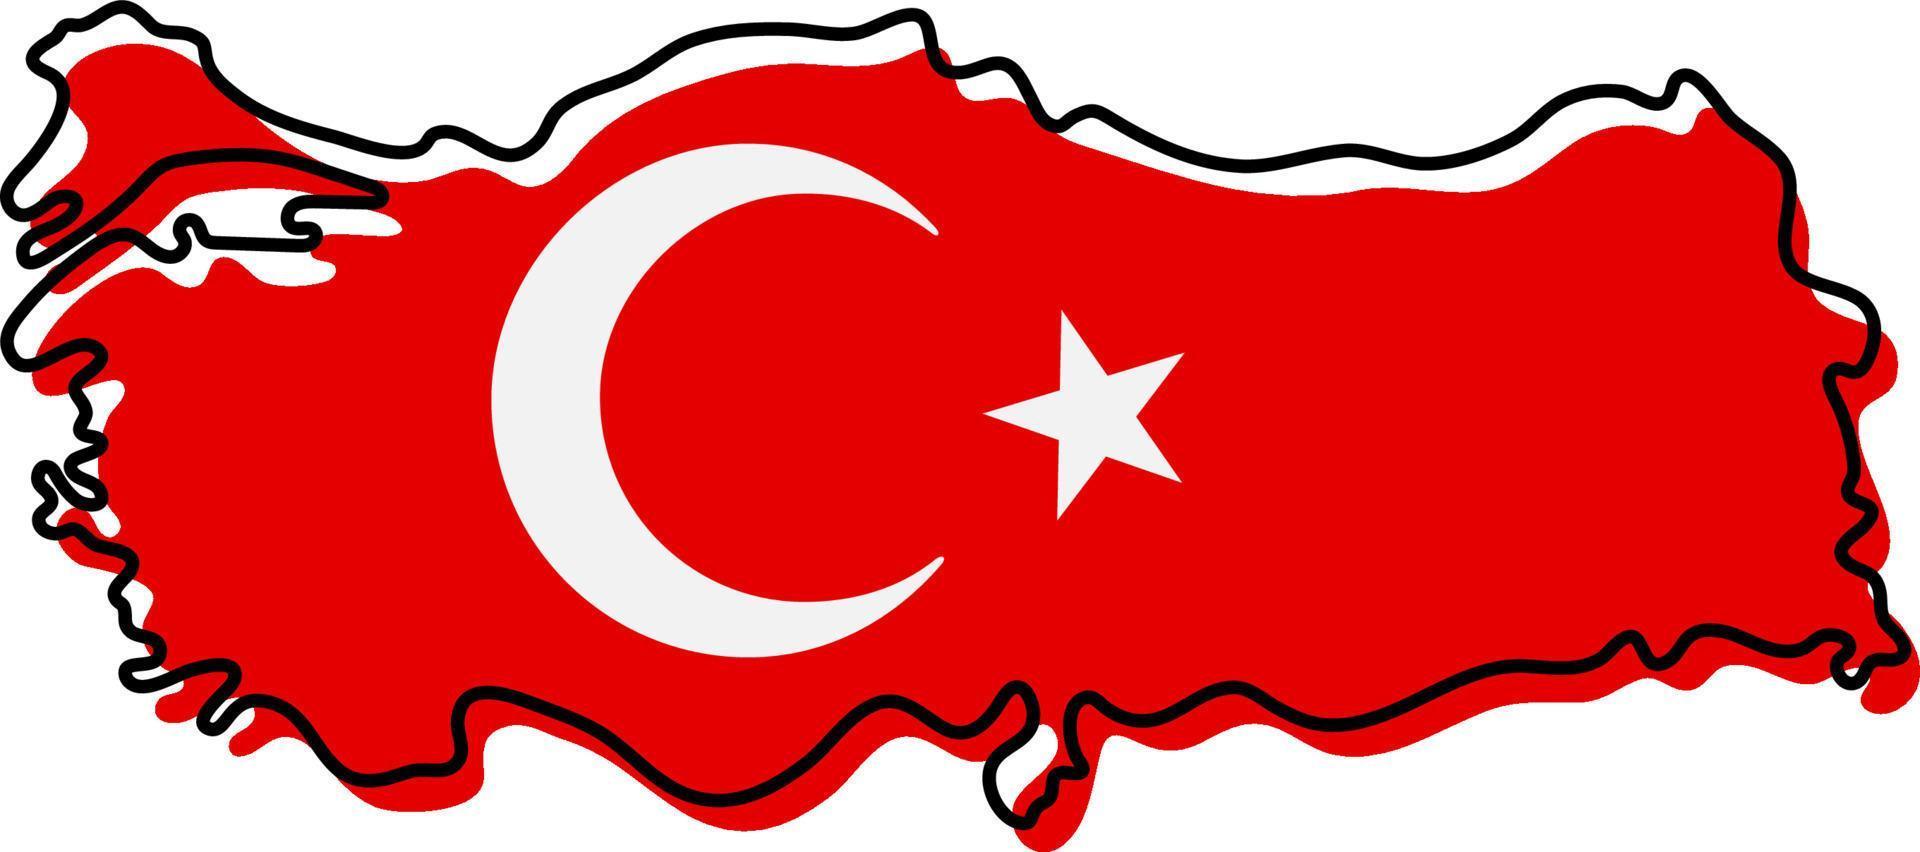 Carte muette stylisée de la Turquie avec l'icône du drapeau national. carte des couleurs du drapeau de l'illustration vectorielle de la Turquie. vecteur